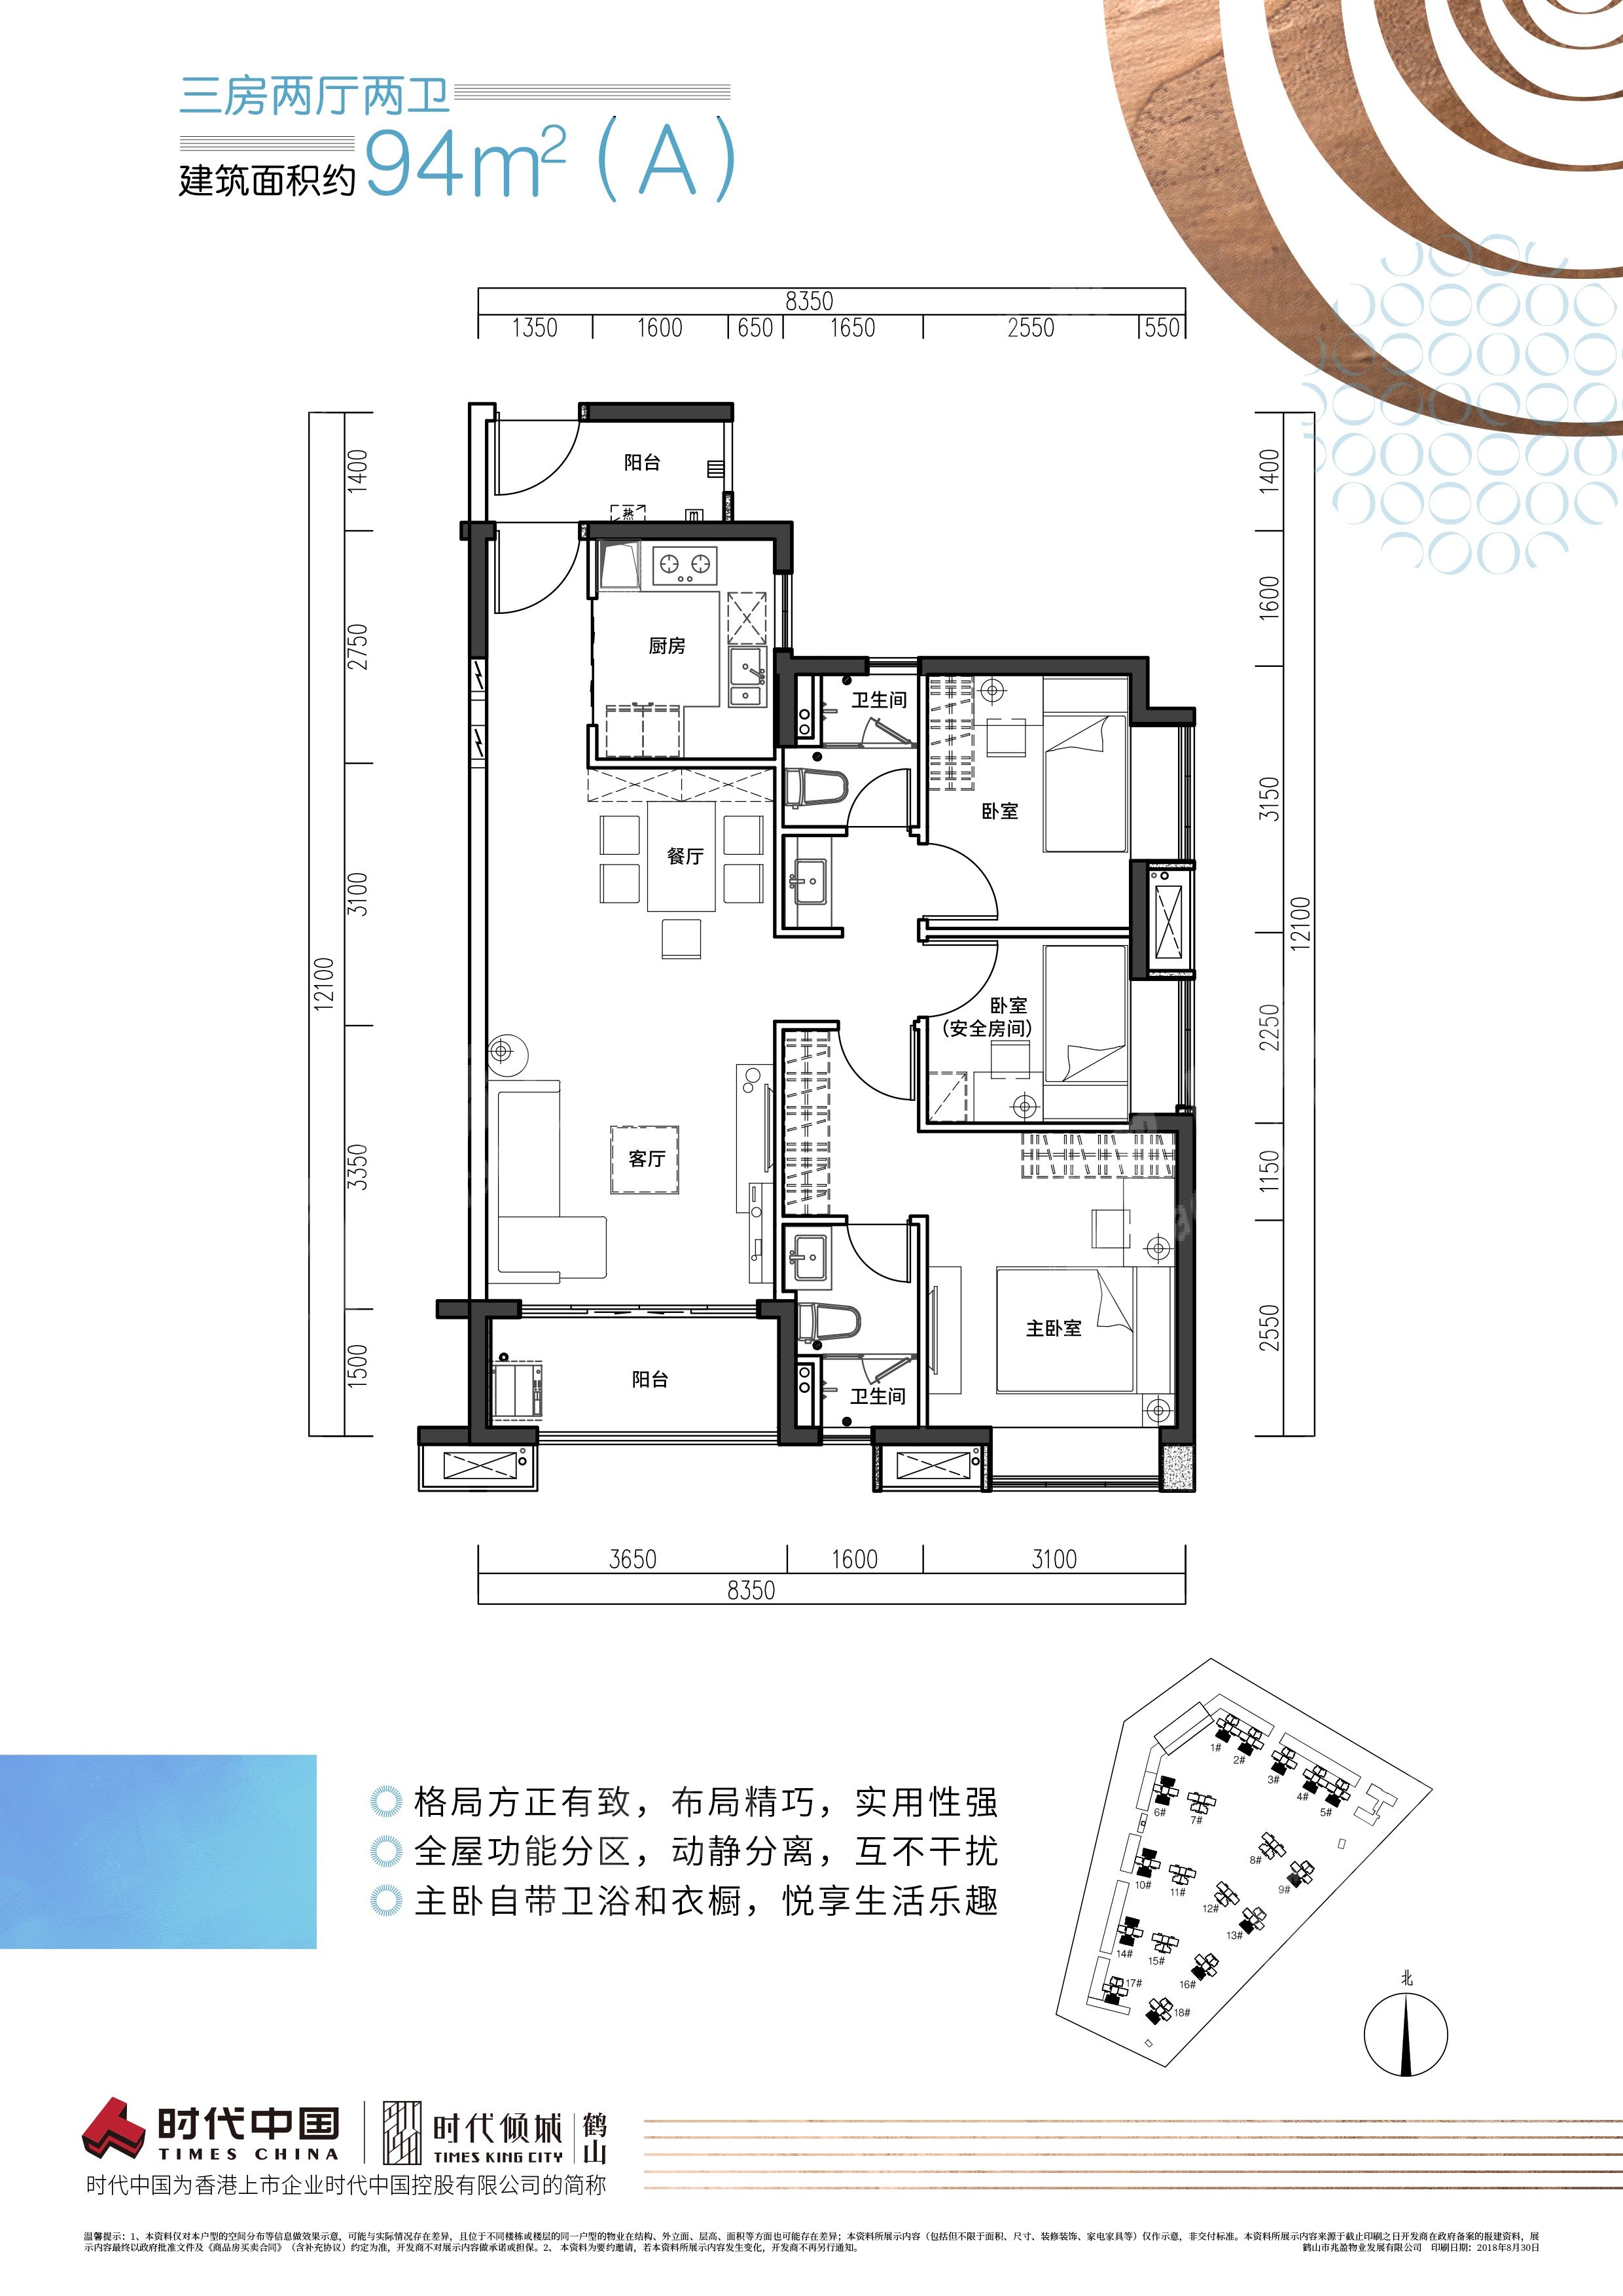 鶴山時代傾城（新房）新房94（A）戶型 3室2廳2衛戶型圖